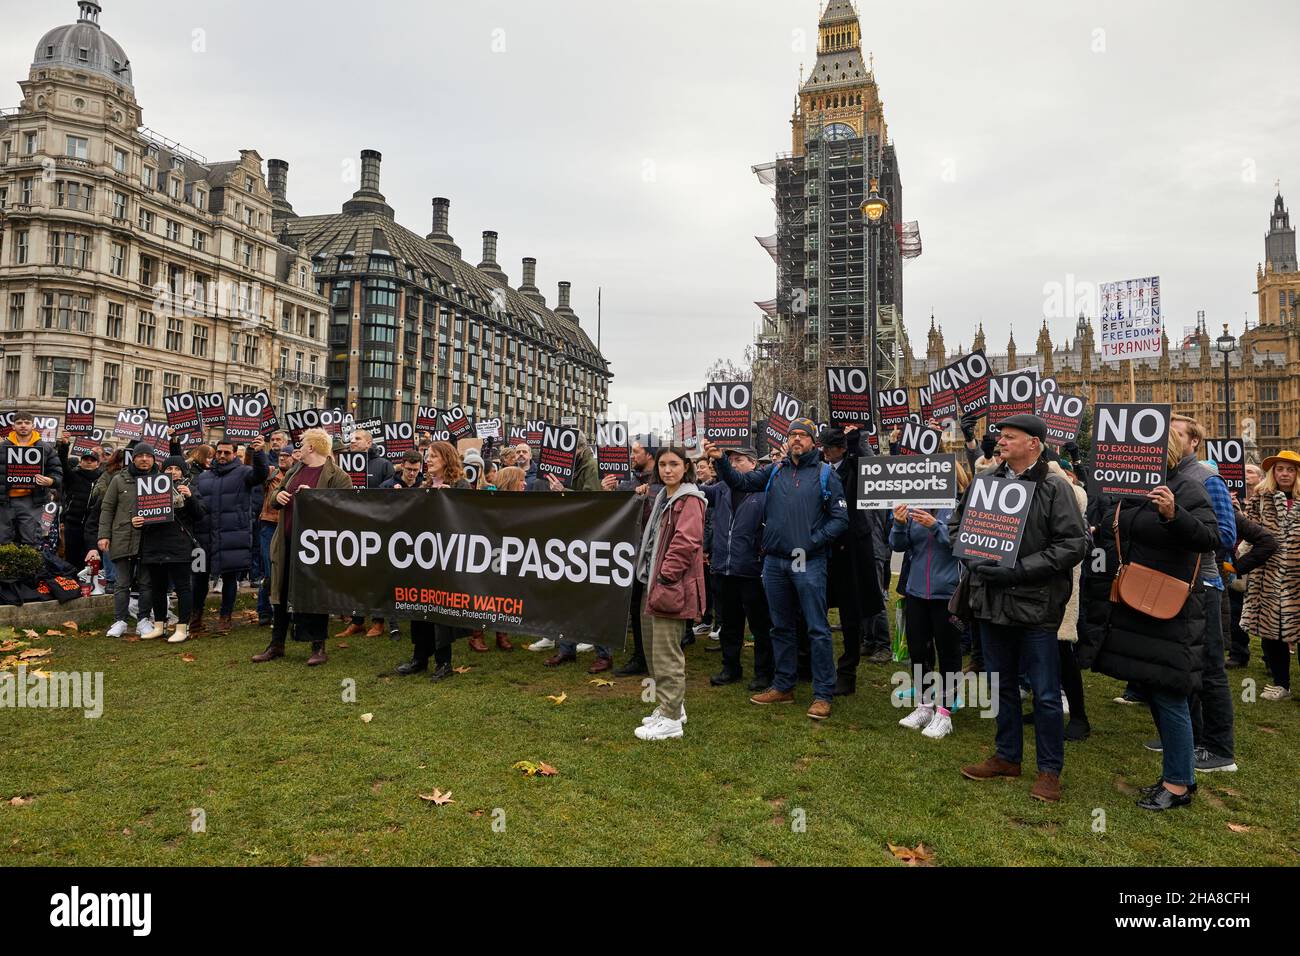 Londres, Reino Unido - 11 de diciembre de 2021: Manifestantes se reunieron en la Plaza del Parlamento en un Stop Covid pasa protesta en Westminster. Foto de stock